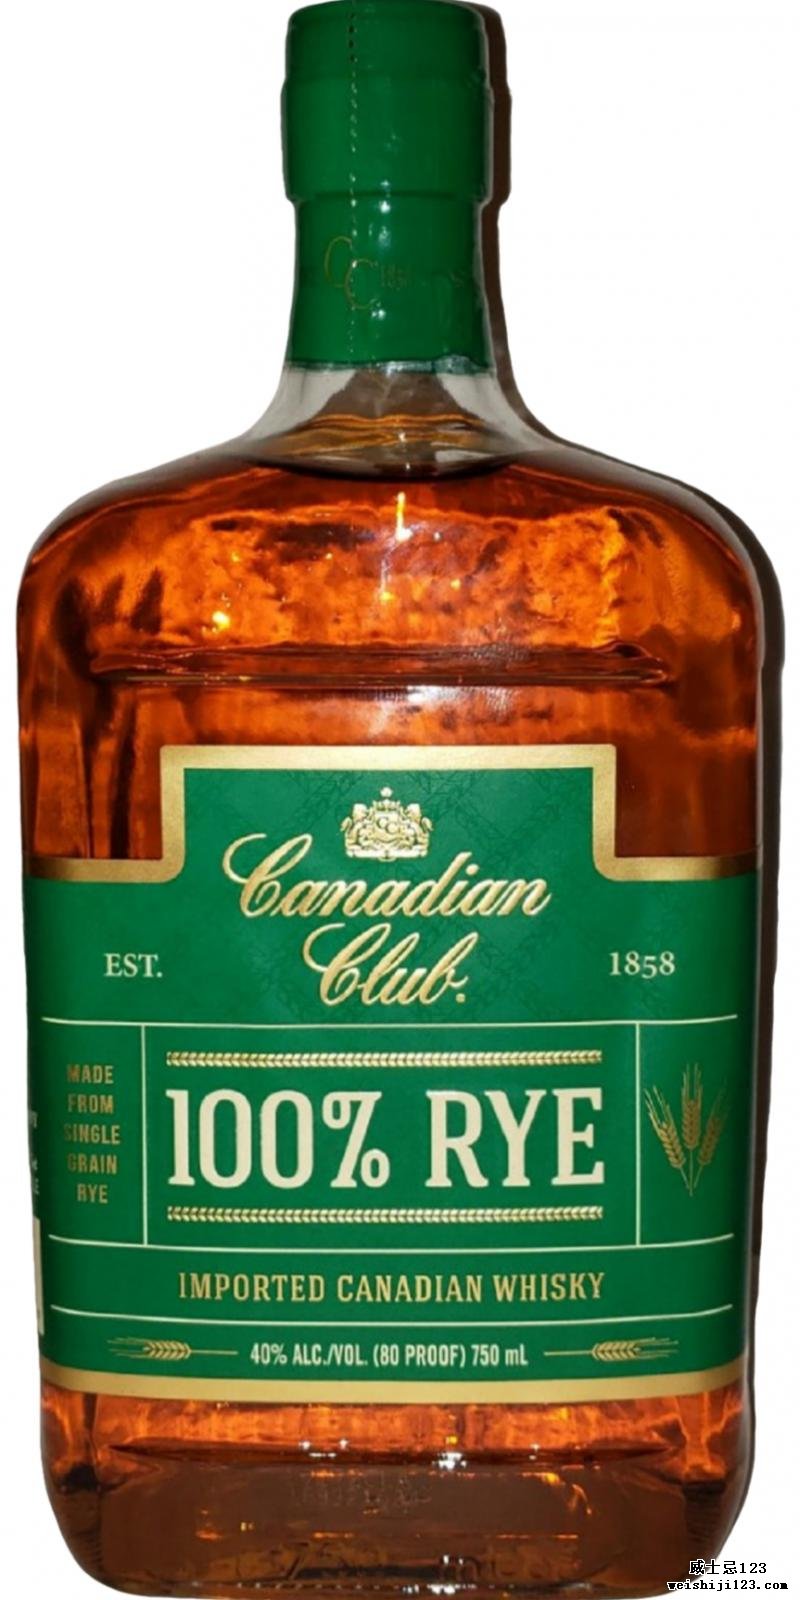 Canadian Club 100% Rye